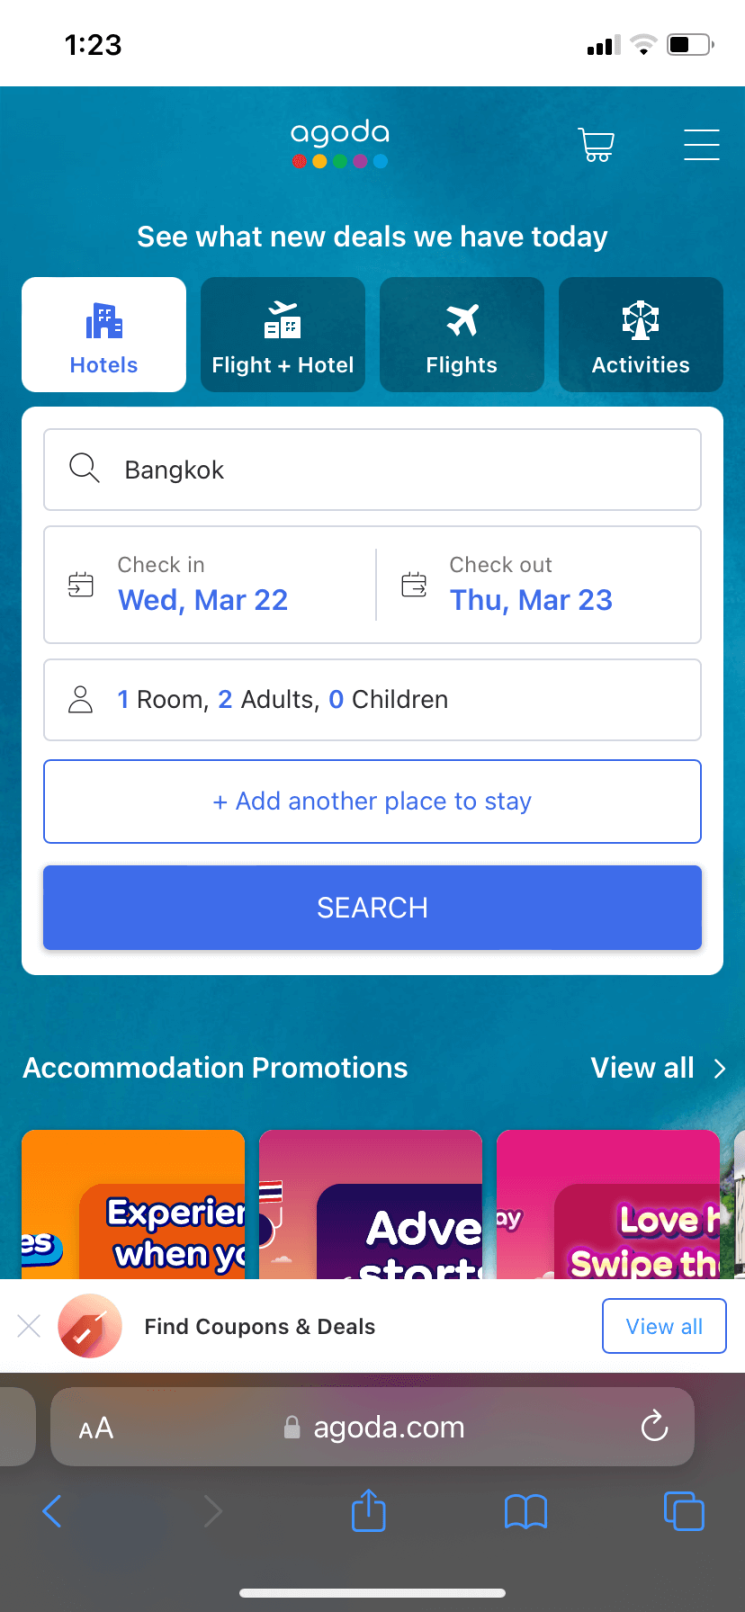 aplikasi booking hotel: Aplikasi Booking Hotel Murah, Ga Bikin Kantong Bolong